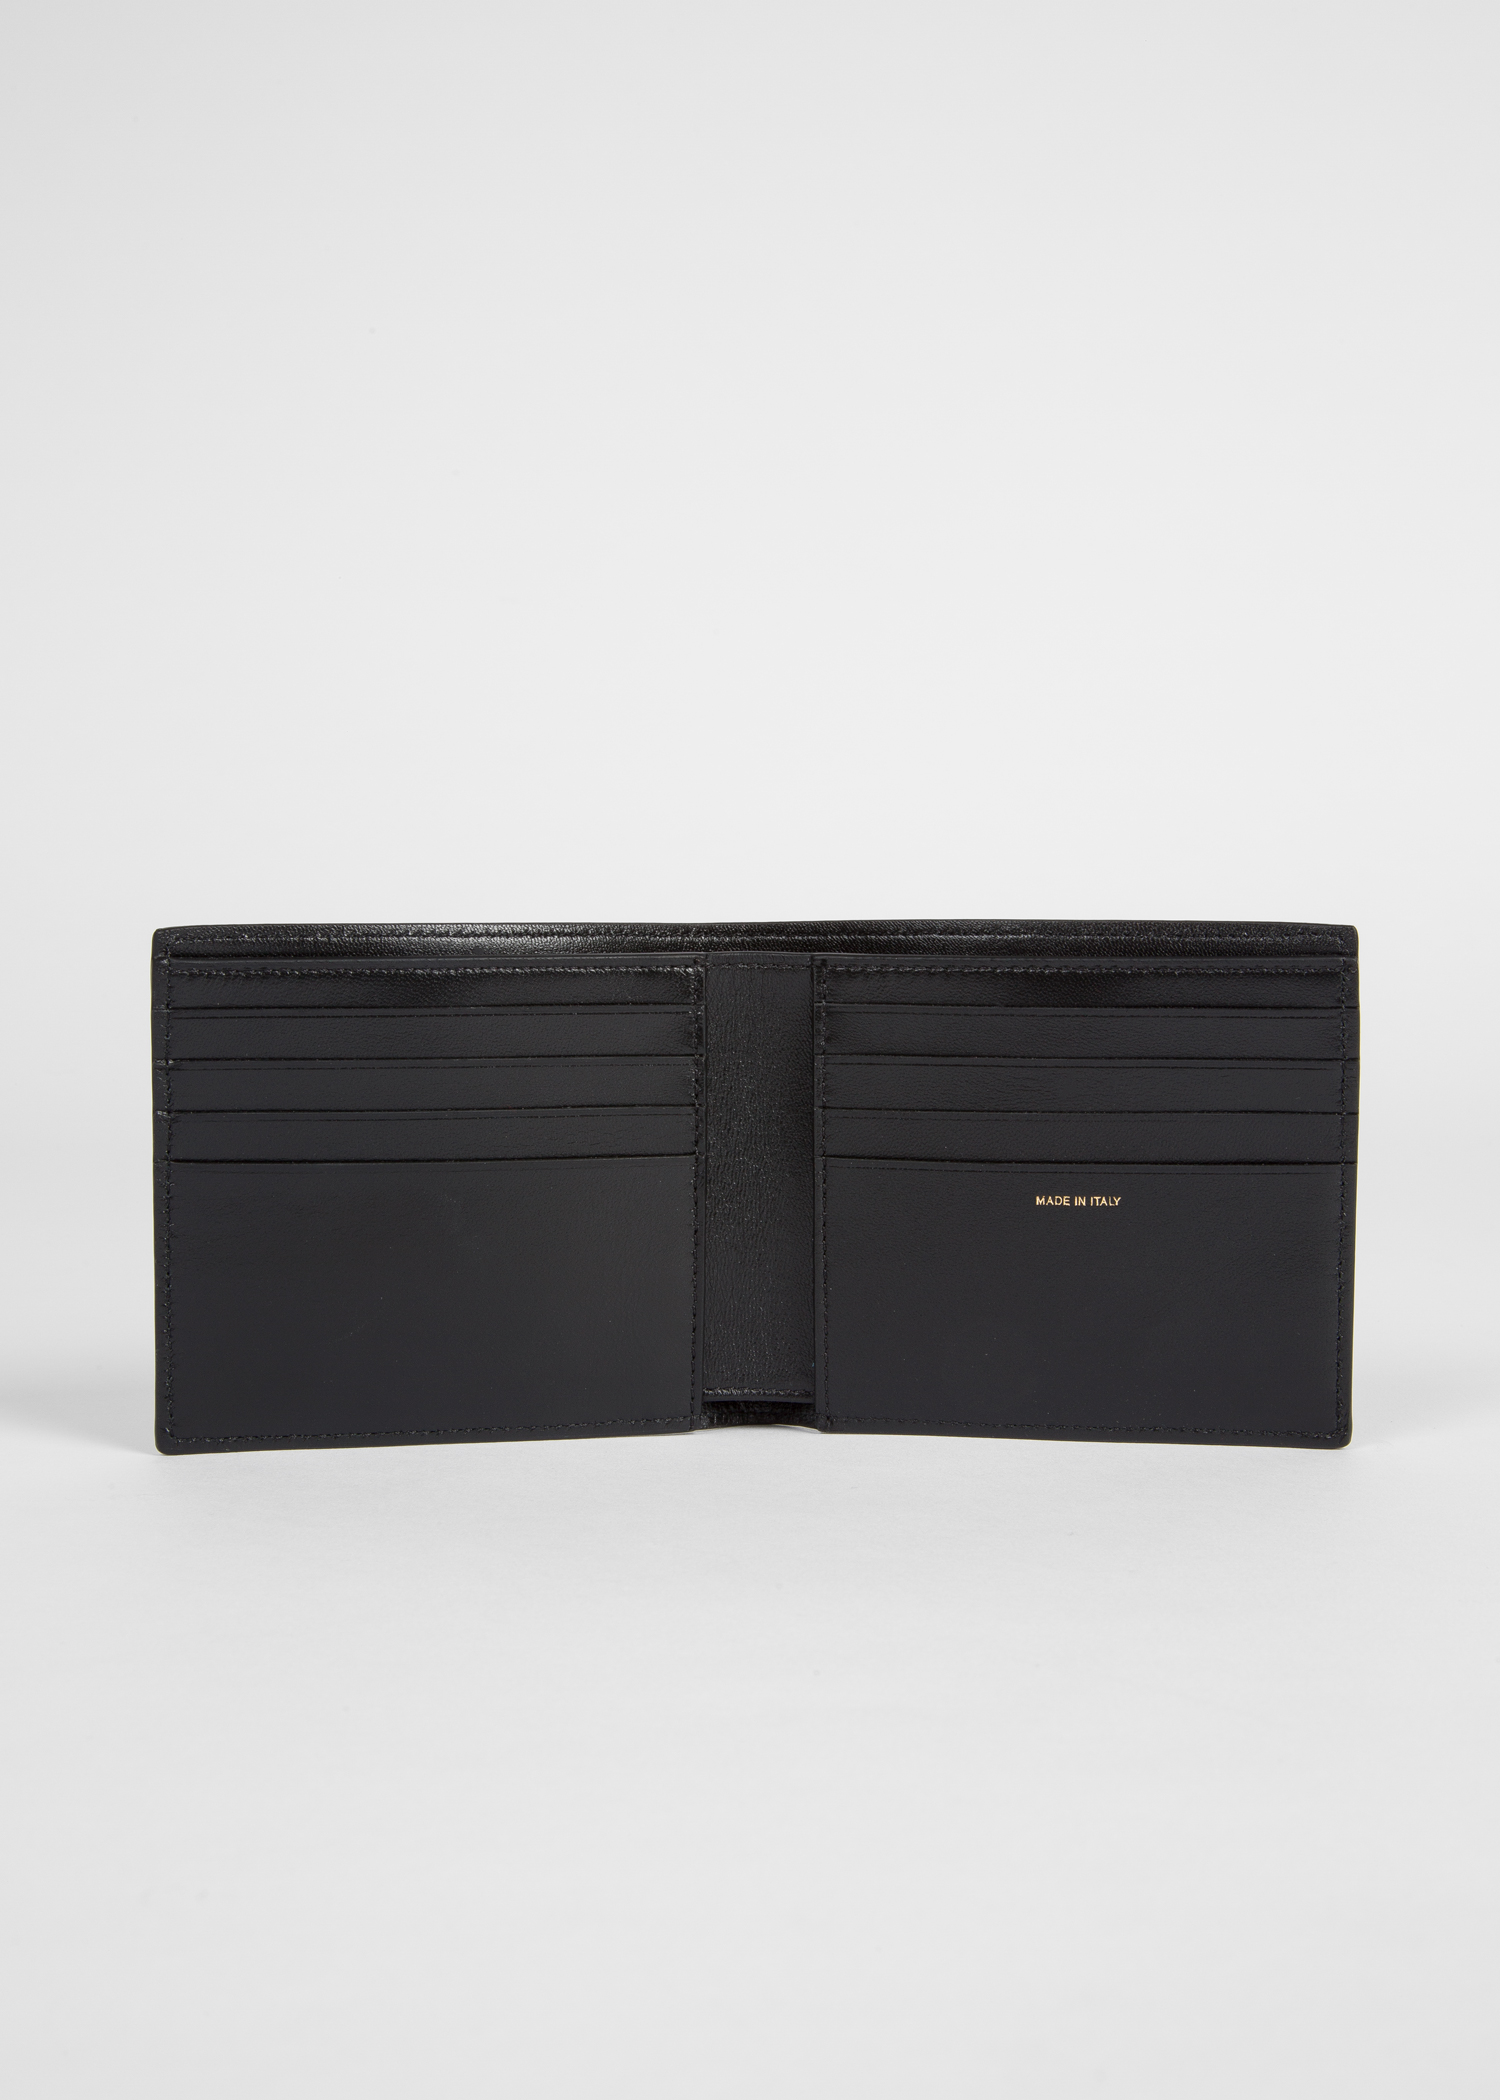 Saint Laurent Men's East/West Leopard-Print Leather Wallet